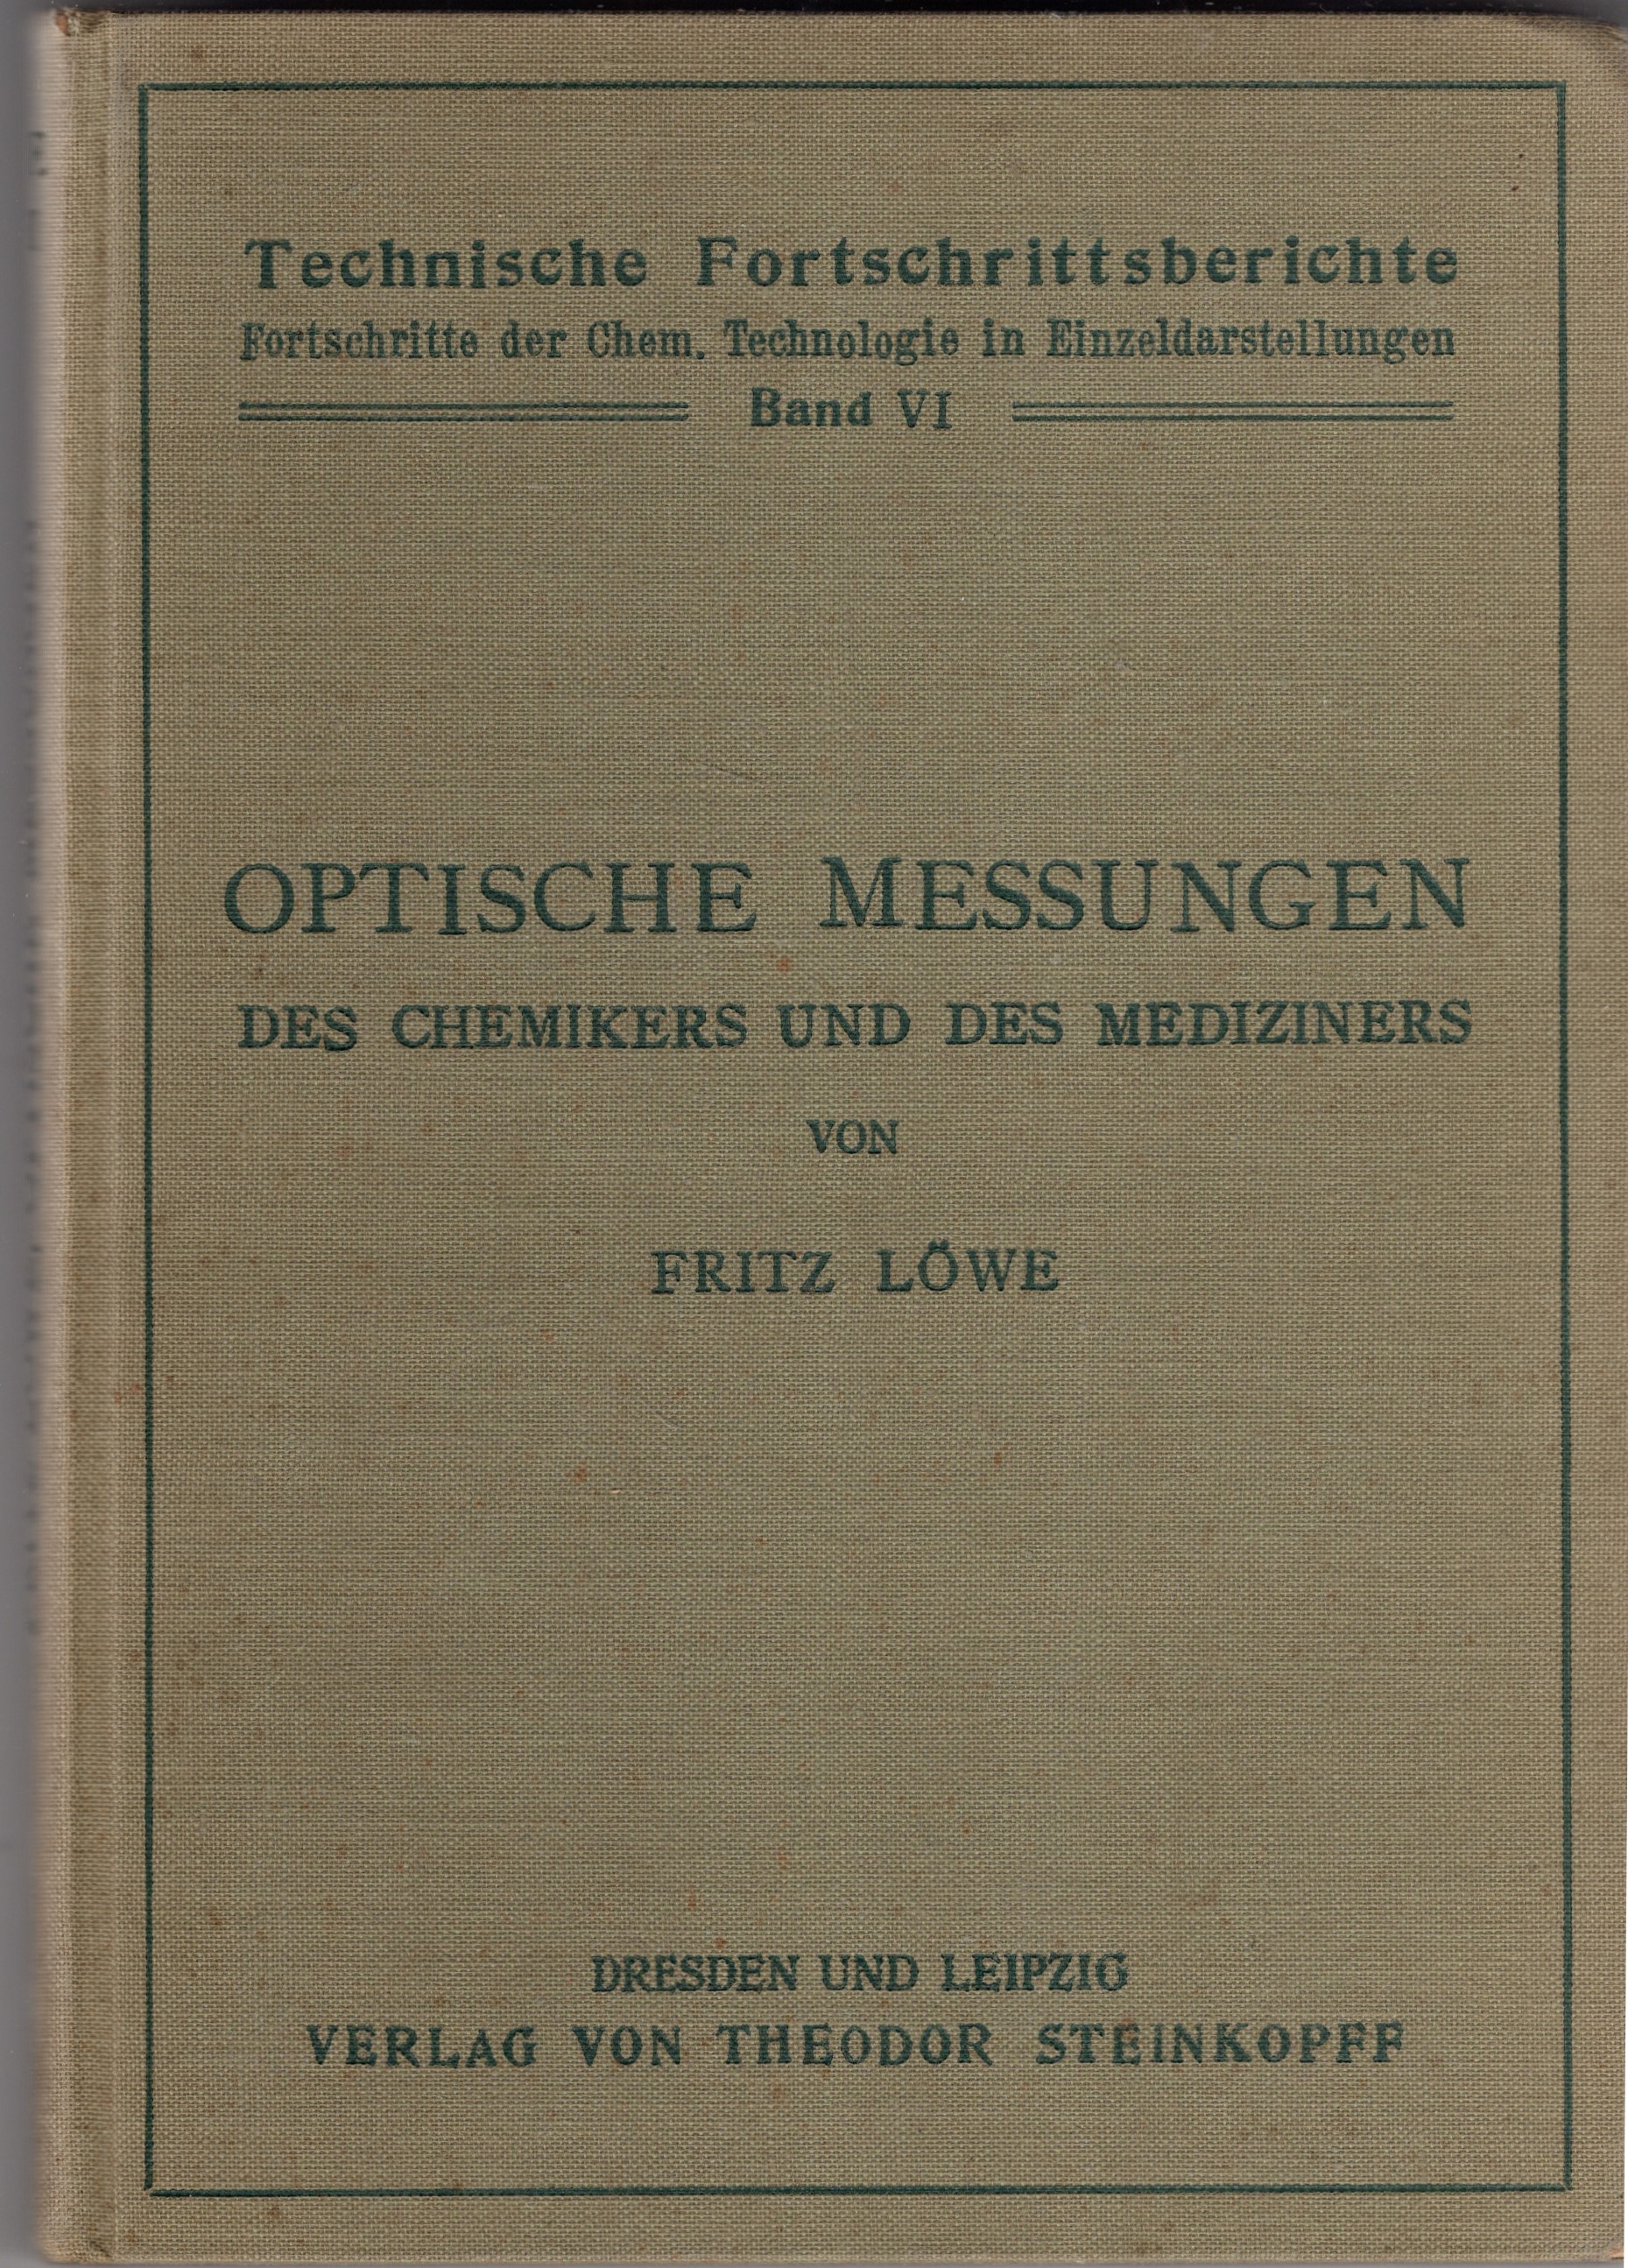 Lwe, Fritz - Optische Messungen des Chemikers und des Mediziners